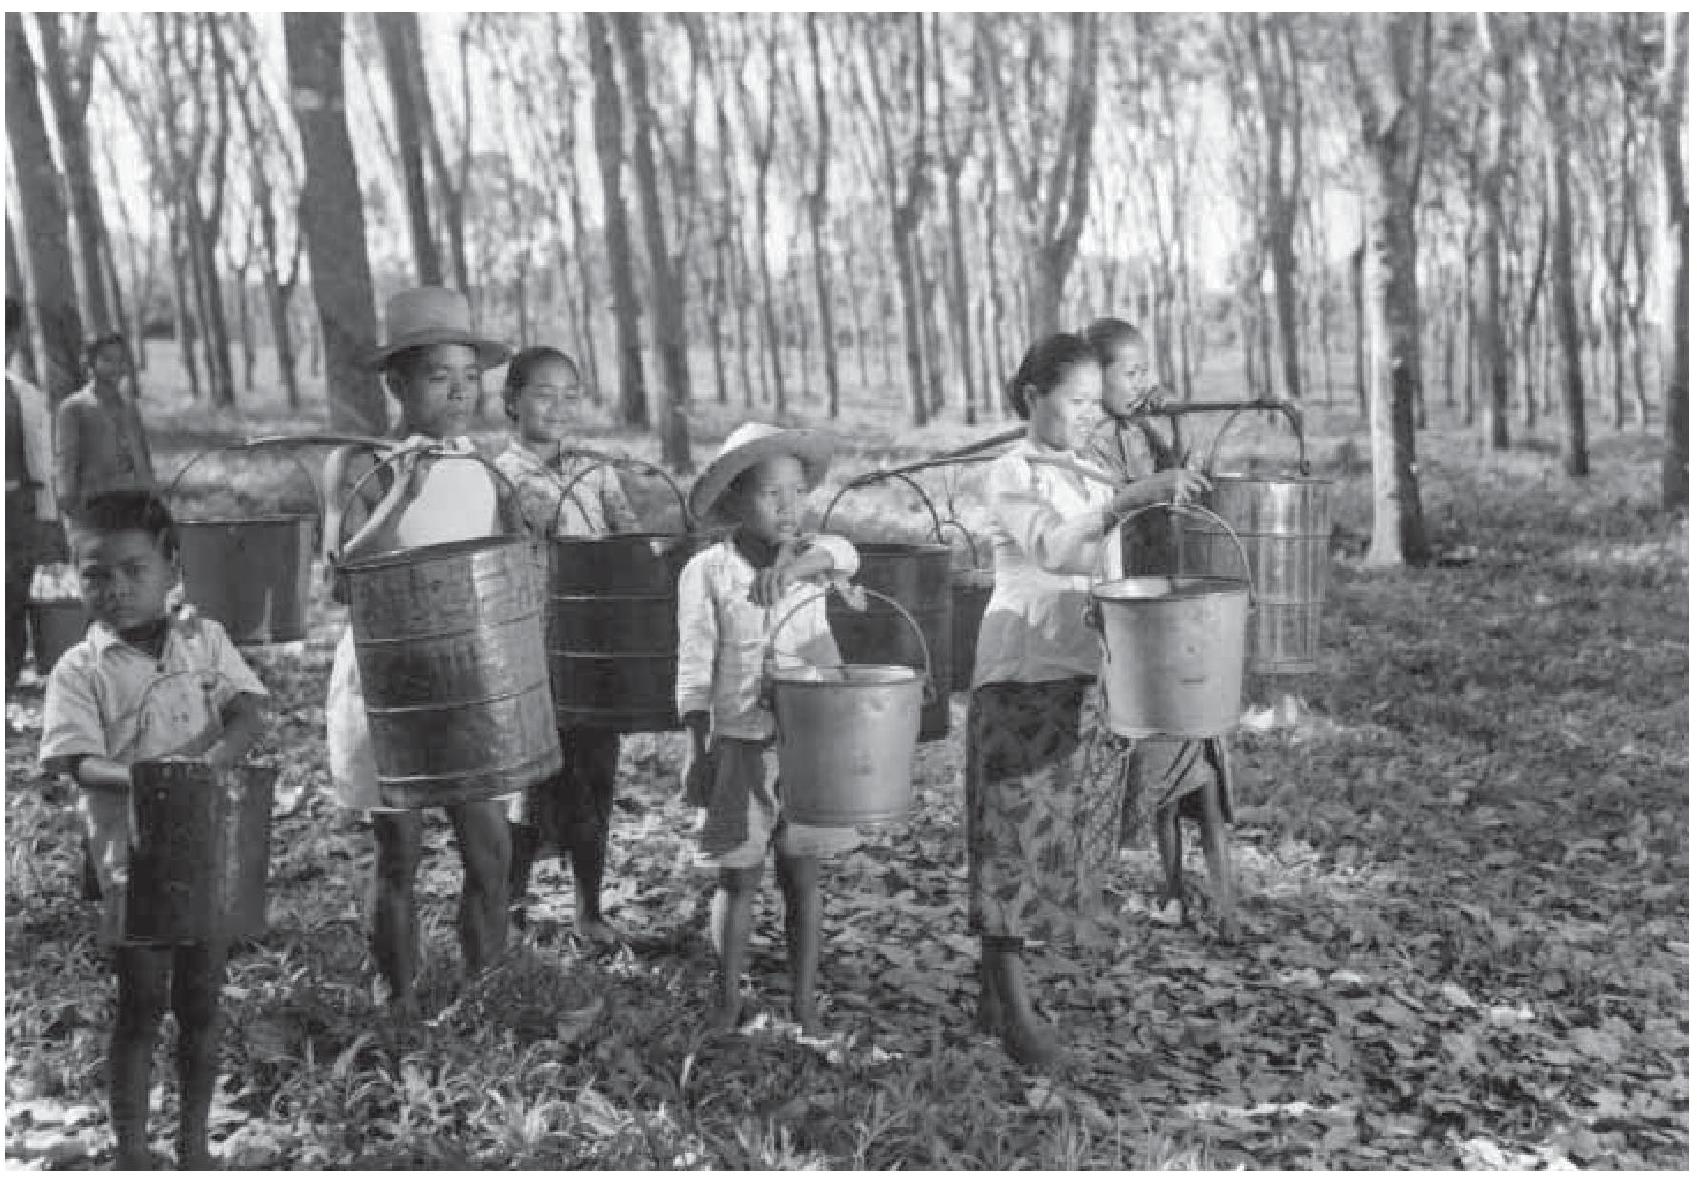 0093 Tukang-tukang sadap siap dengan getahnya di perkebunan karet, Serpong, 5 Agustus 1951 Sumber ANRI, Kempen JB 1005 garis miring 021